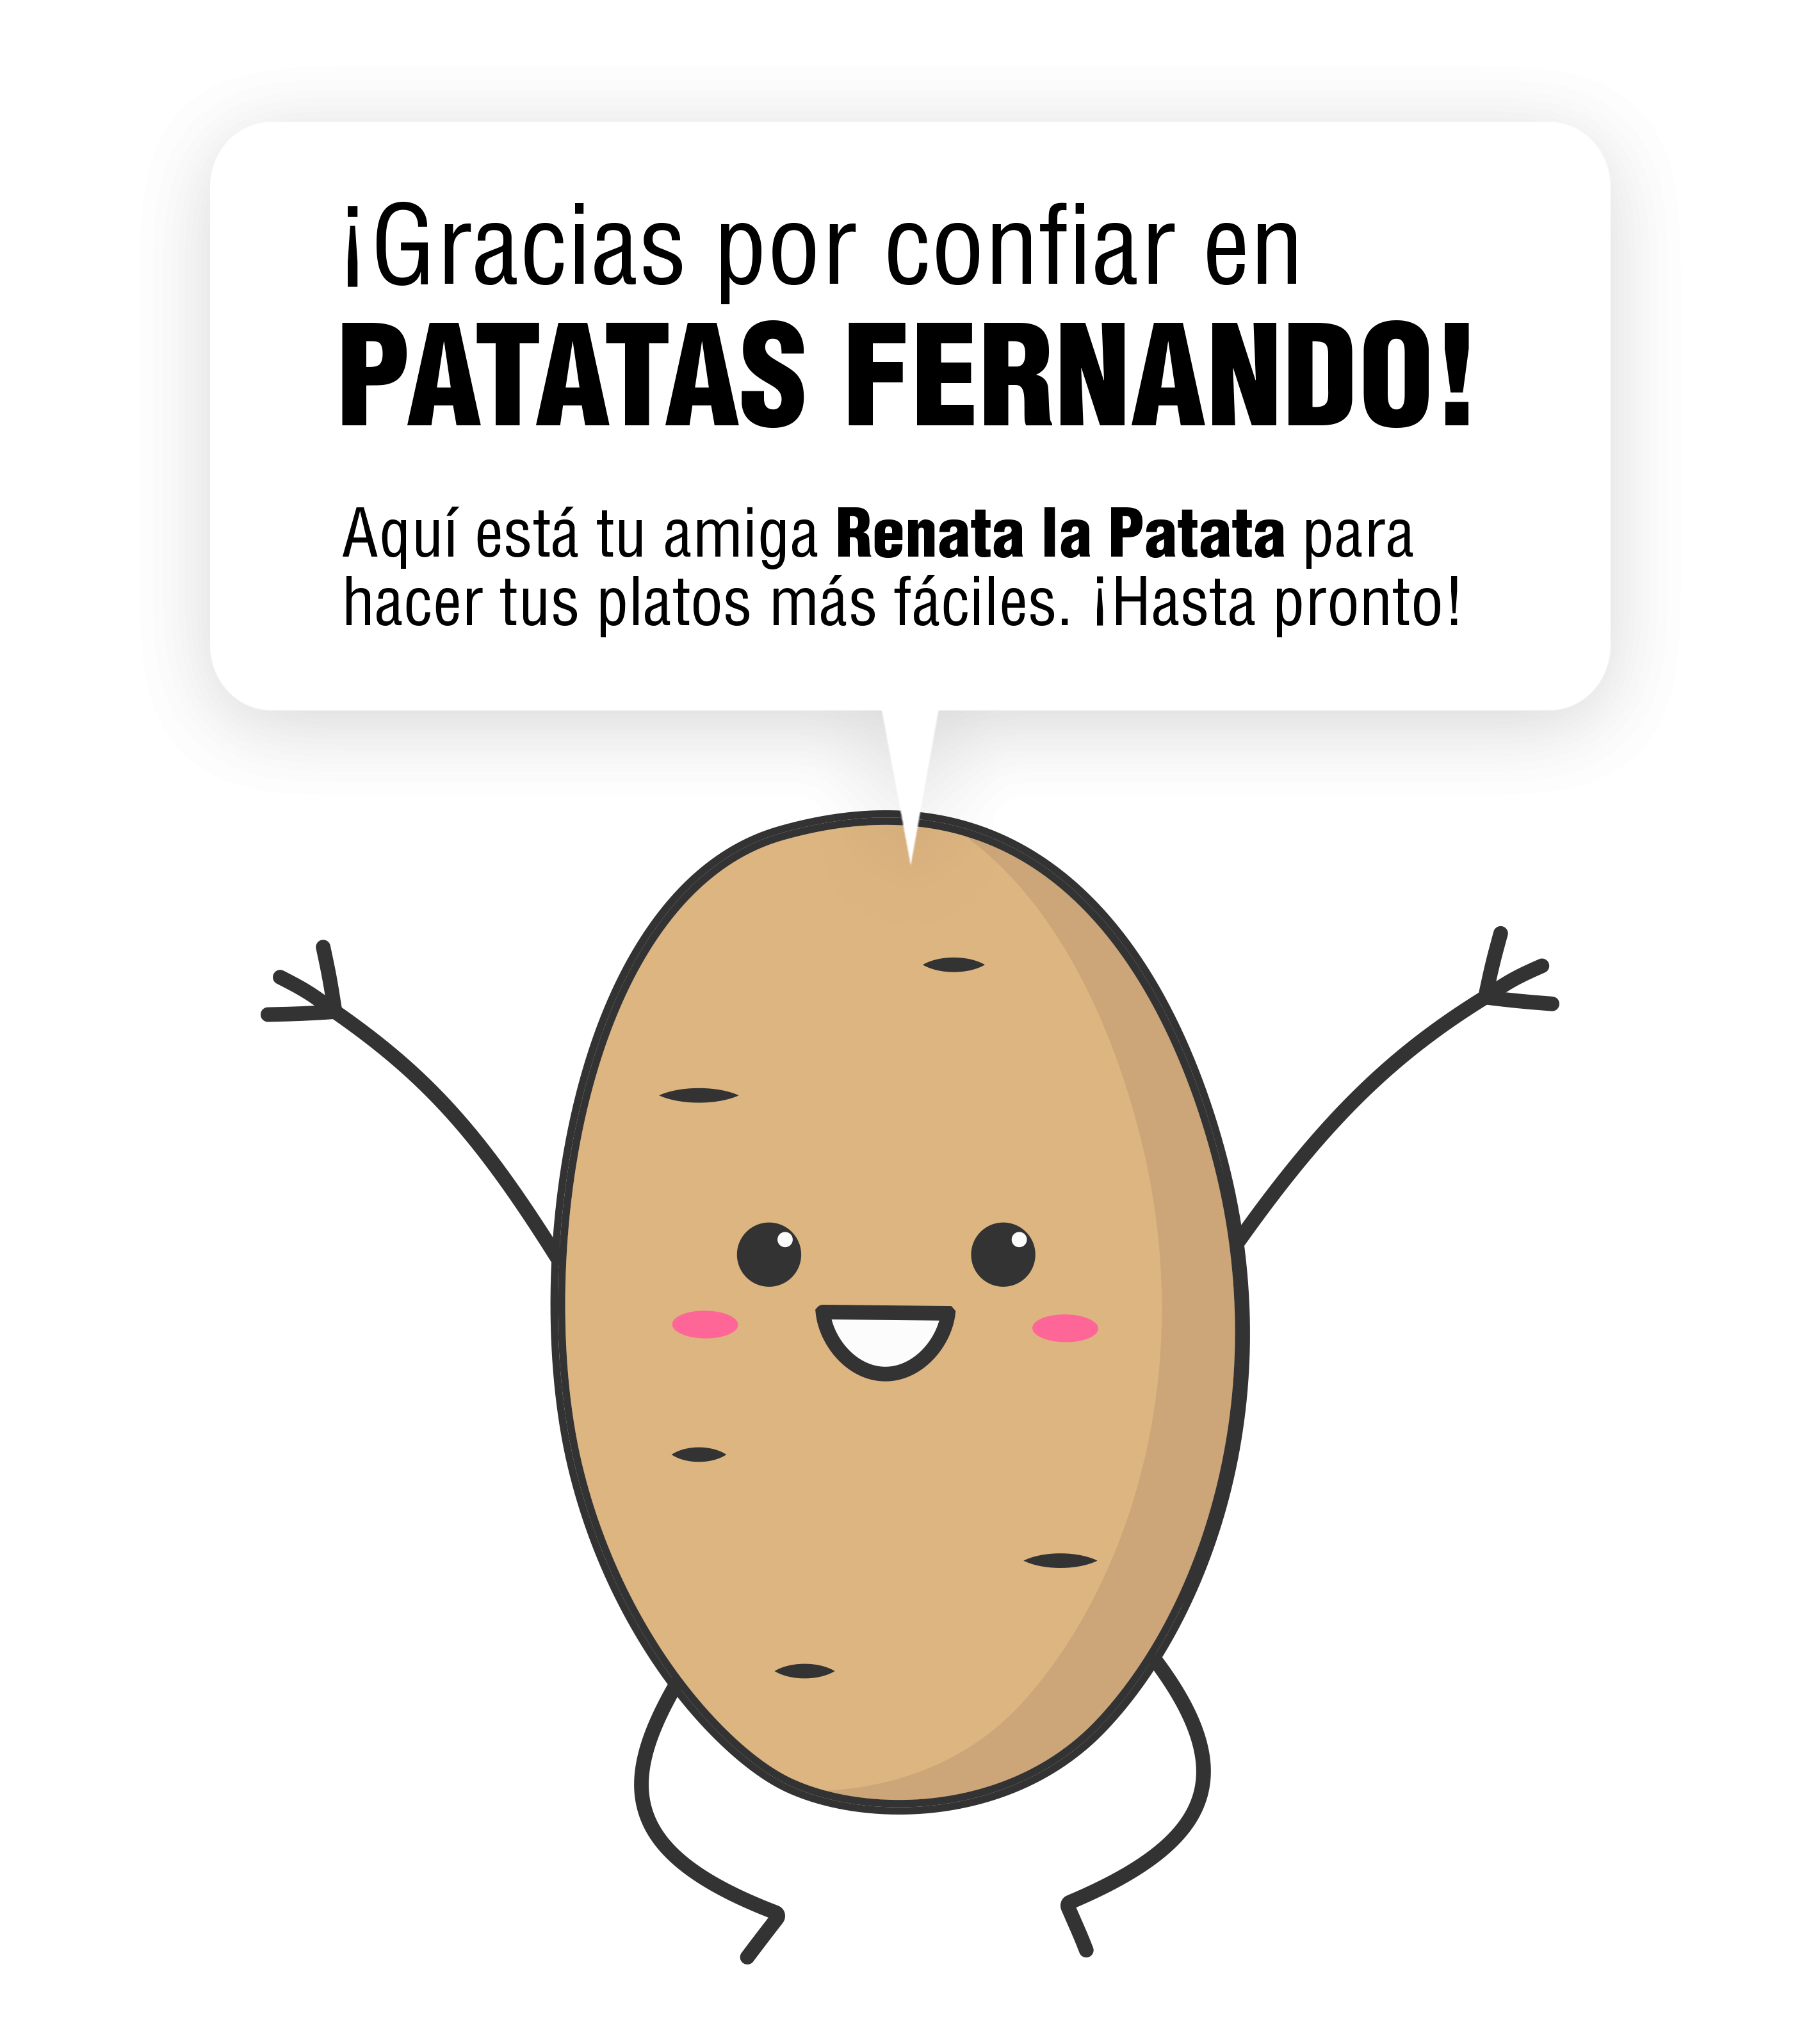 Patatas Fernando - Renata la Patata